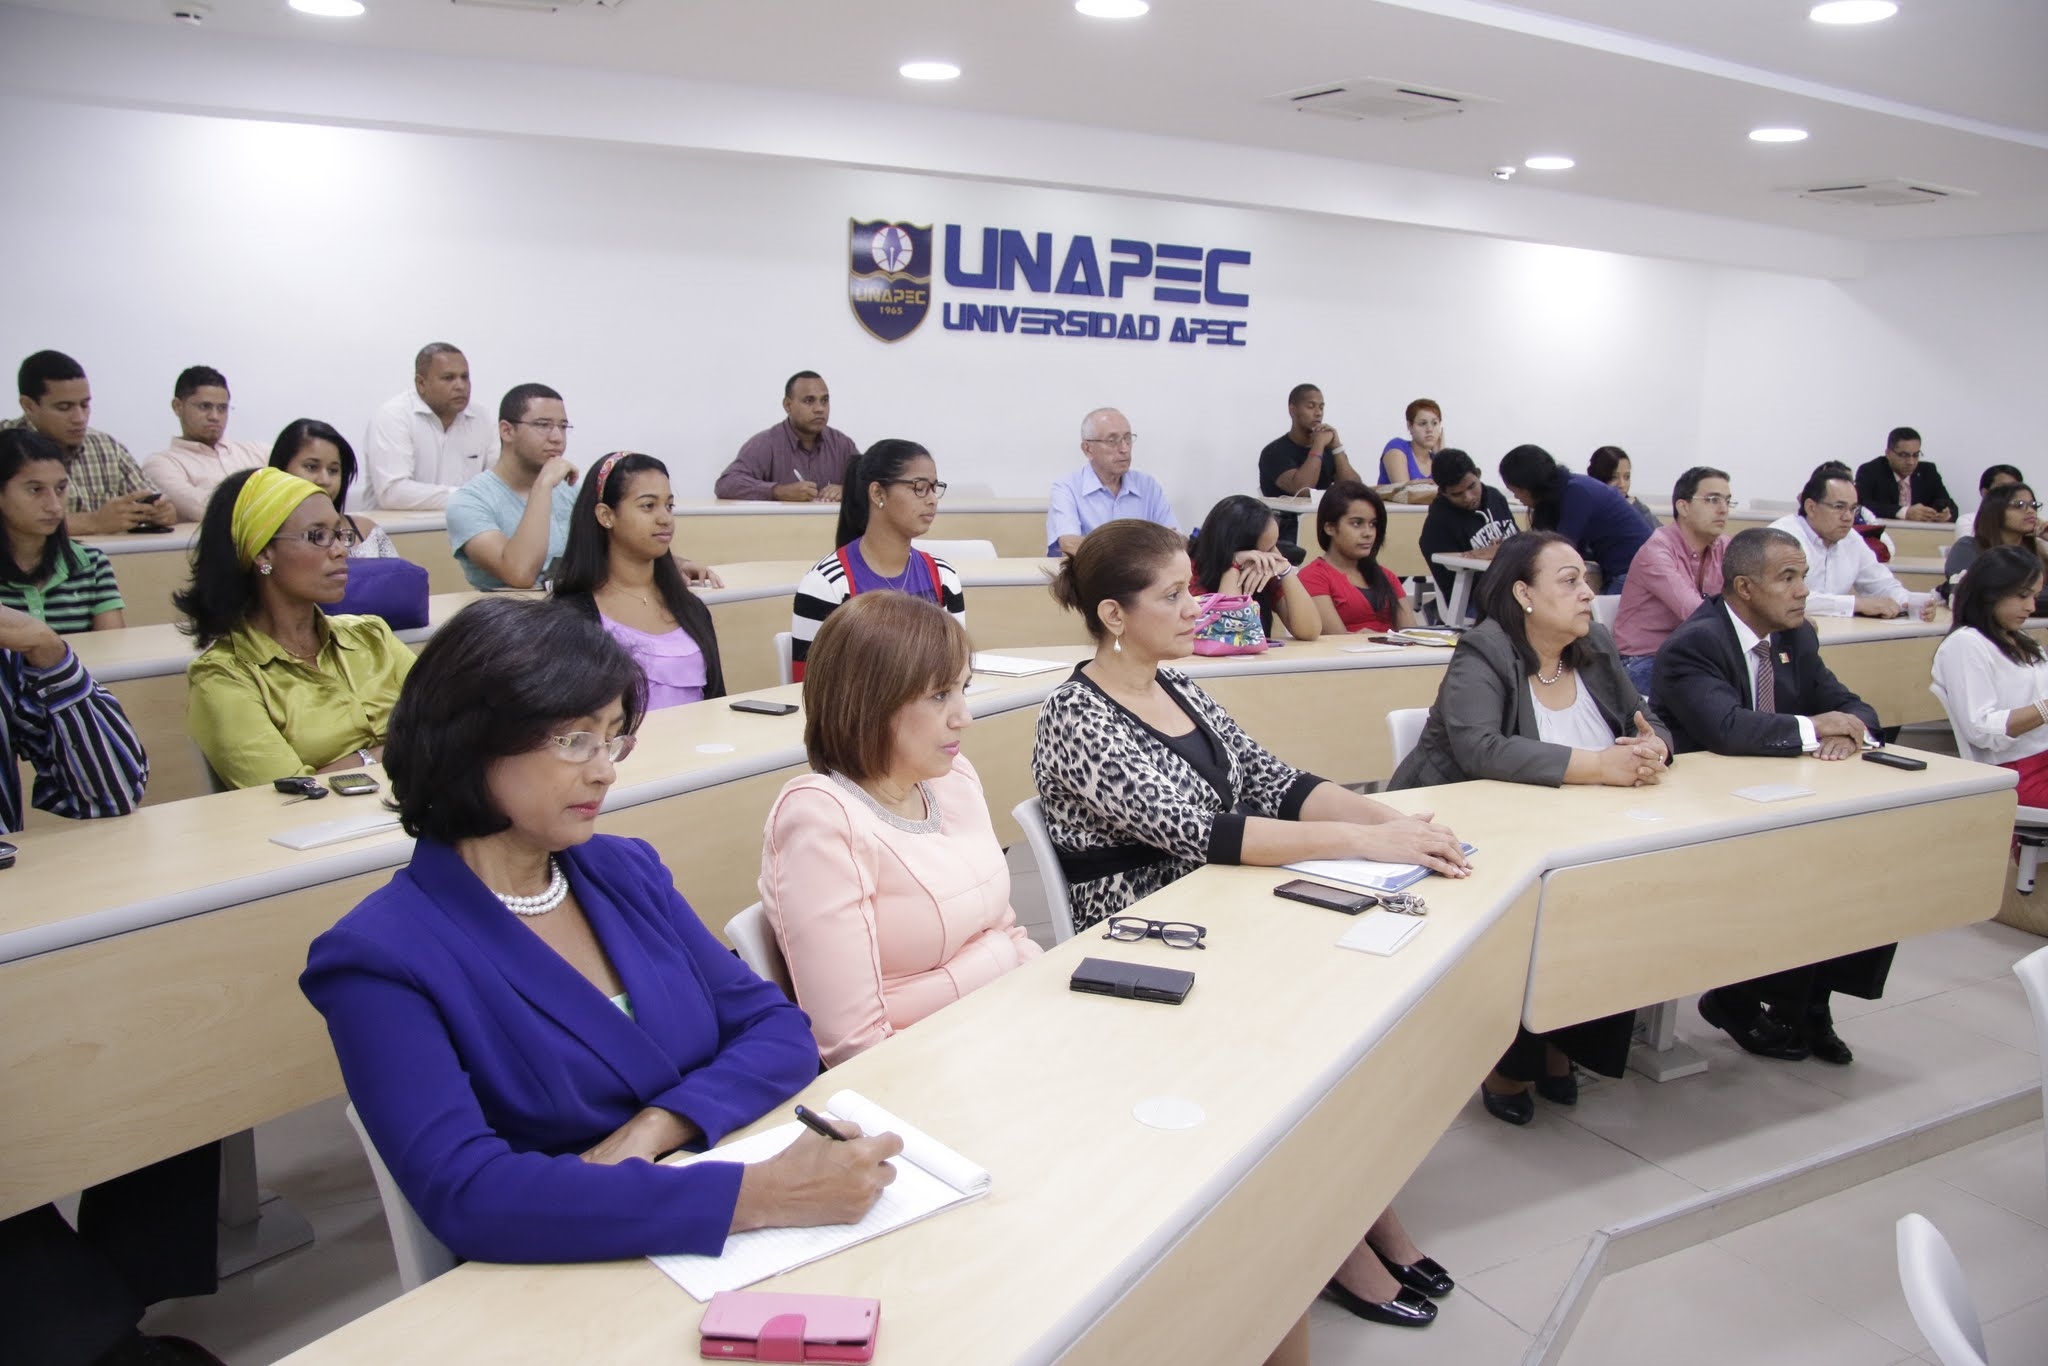 La conferencia fue realizada en el Salón de Conferencias del Edificio I de UNAPEC.